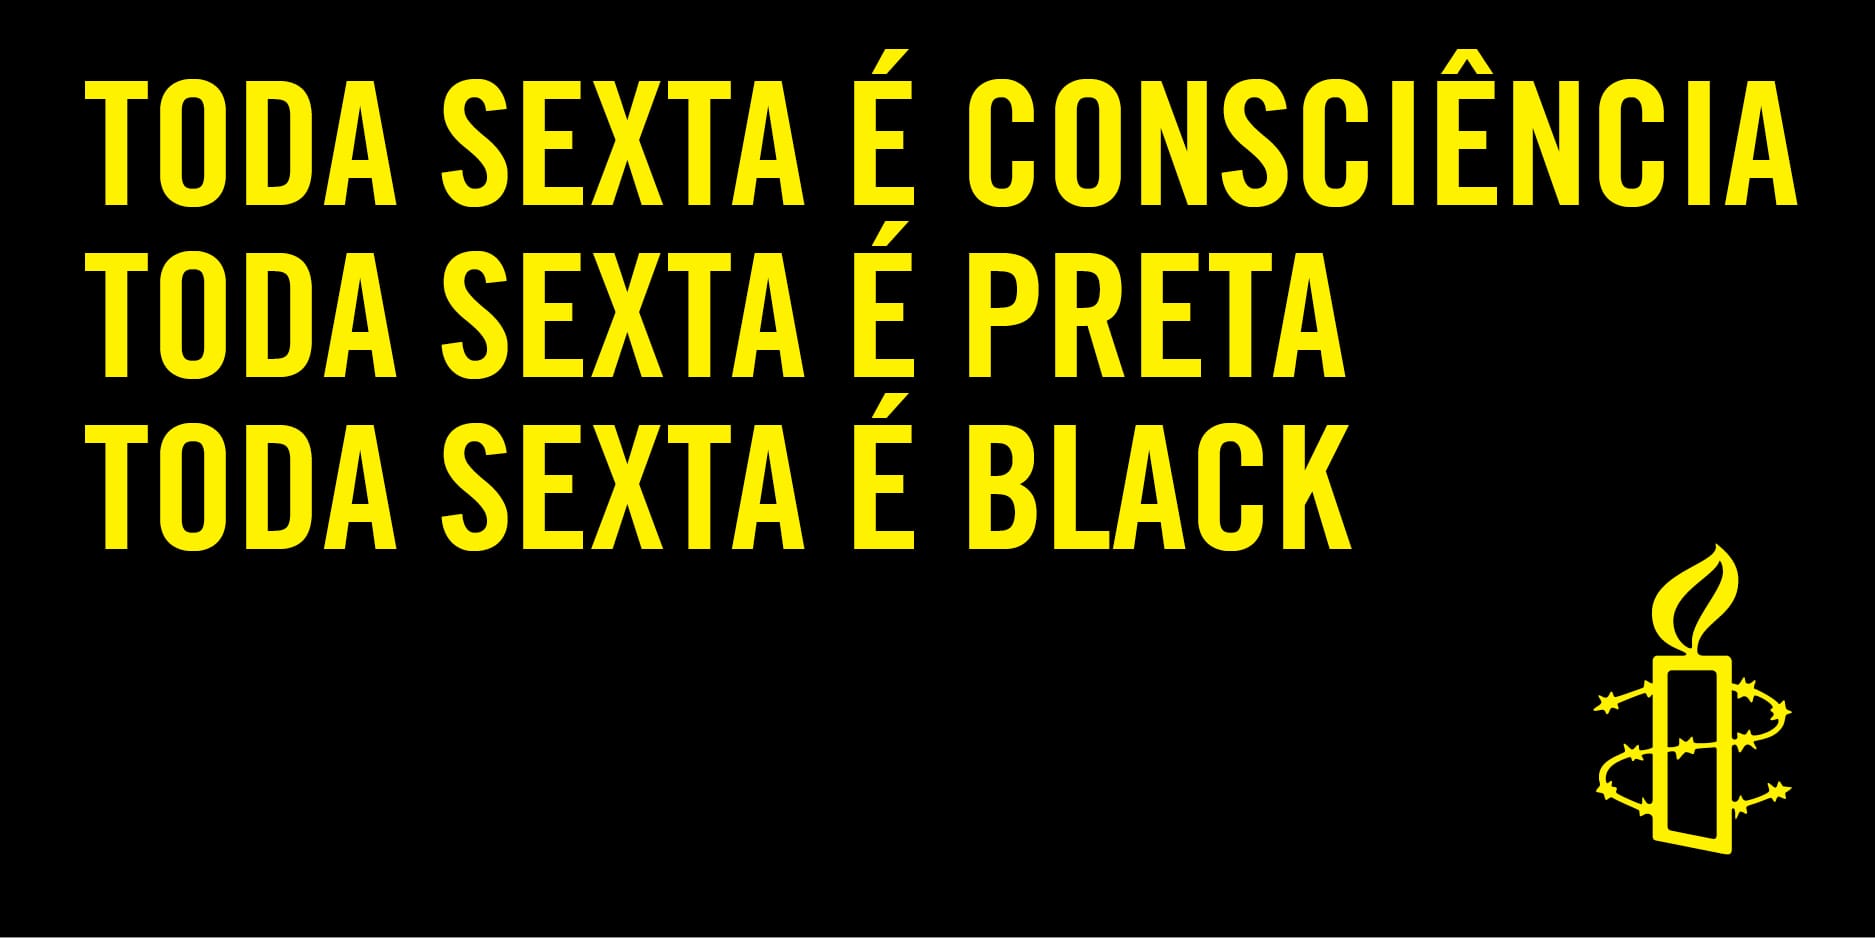 Anistia Internacional lança a campanha “Toda Friday é Black” para enfrentamento permanente do racismo estrutural e das violações dos direitos humanos no Brasil